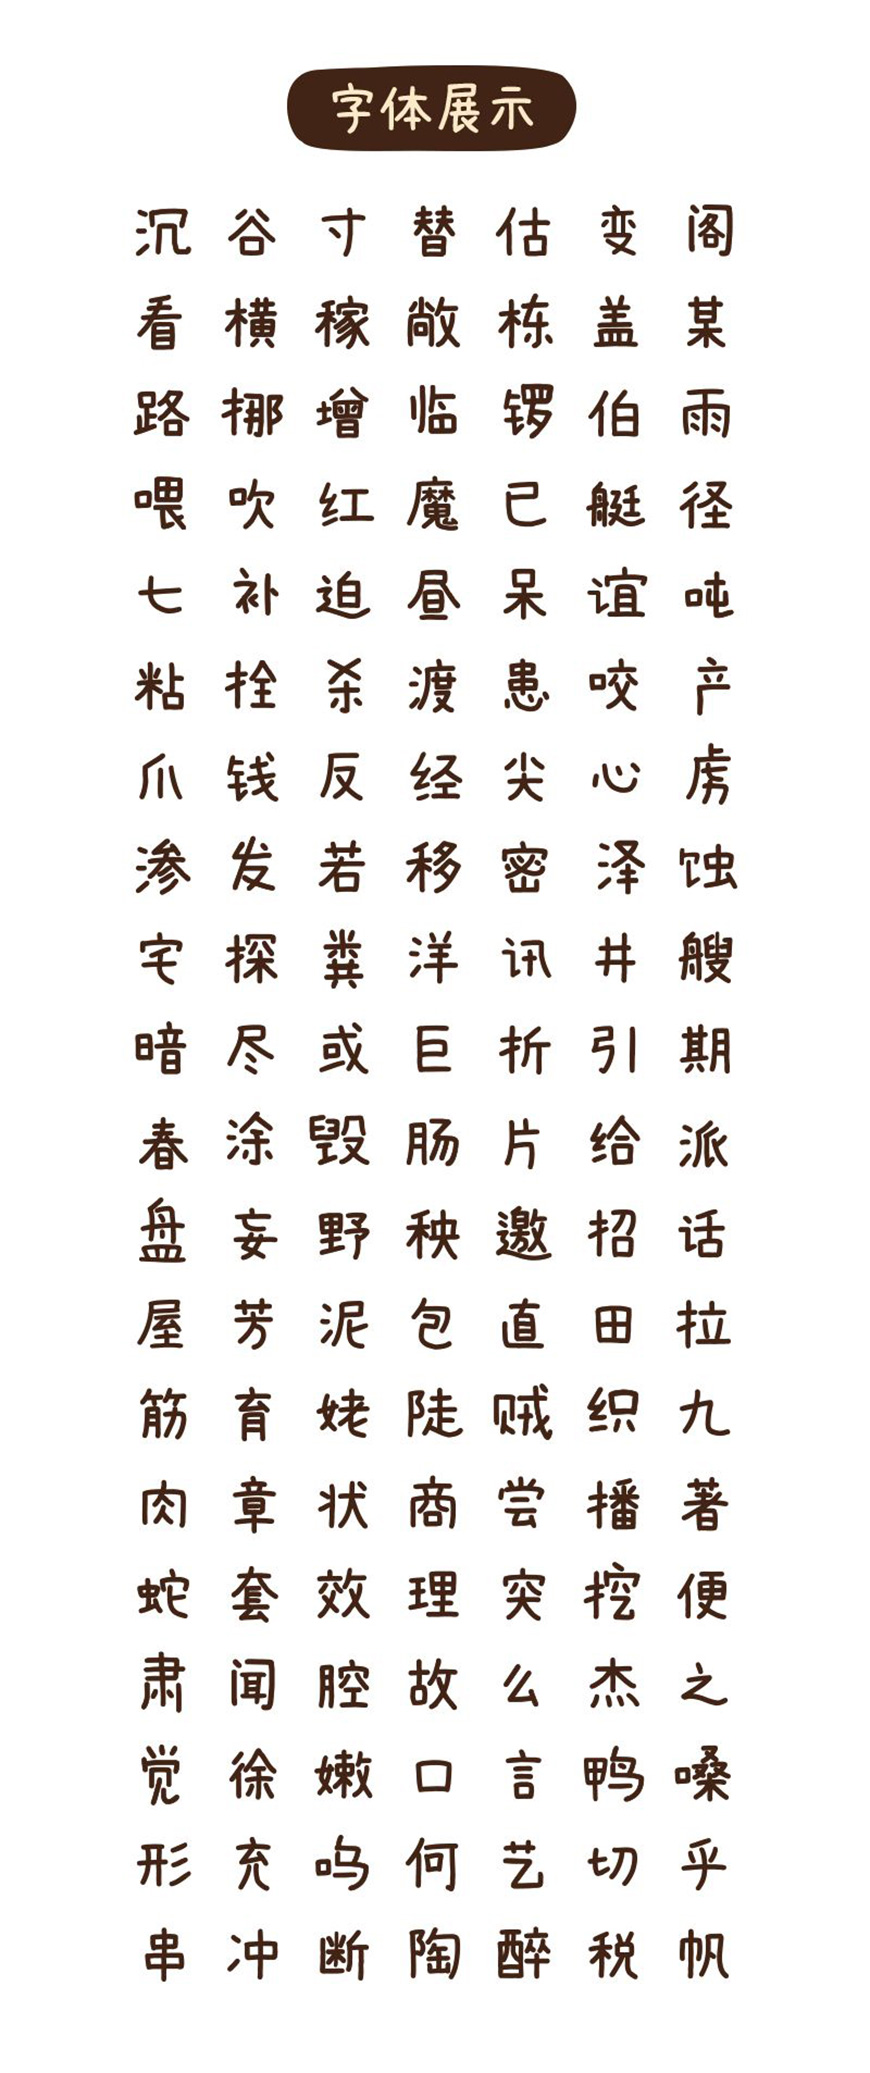 免费字体下载！萌系手写风格中文字体-素材集市康康体